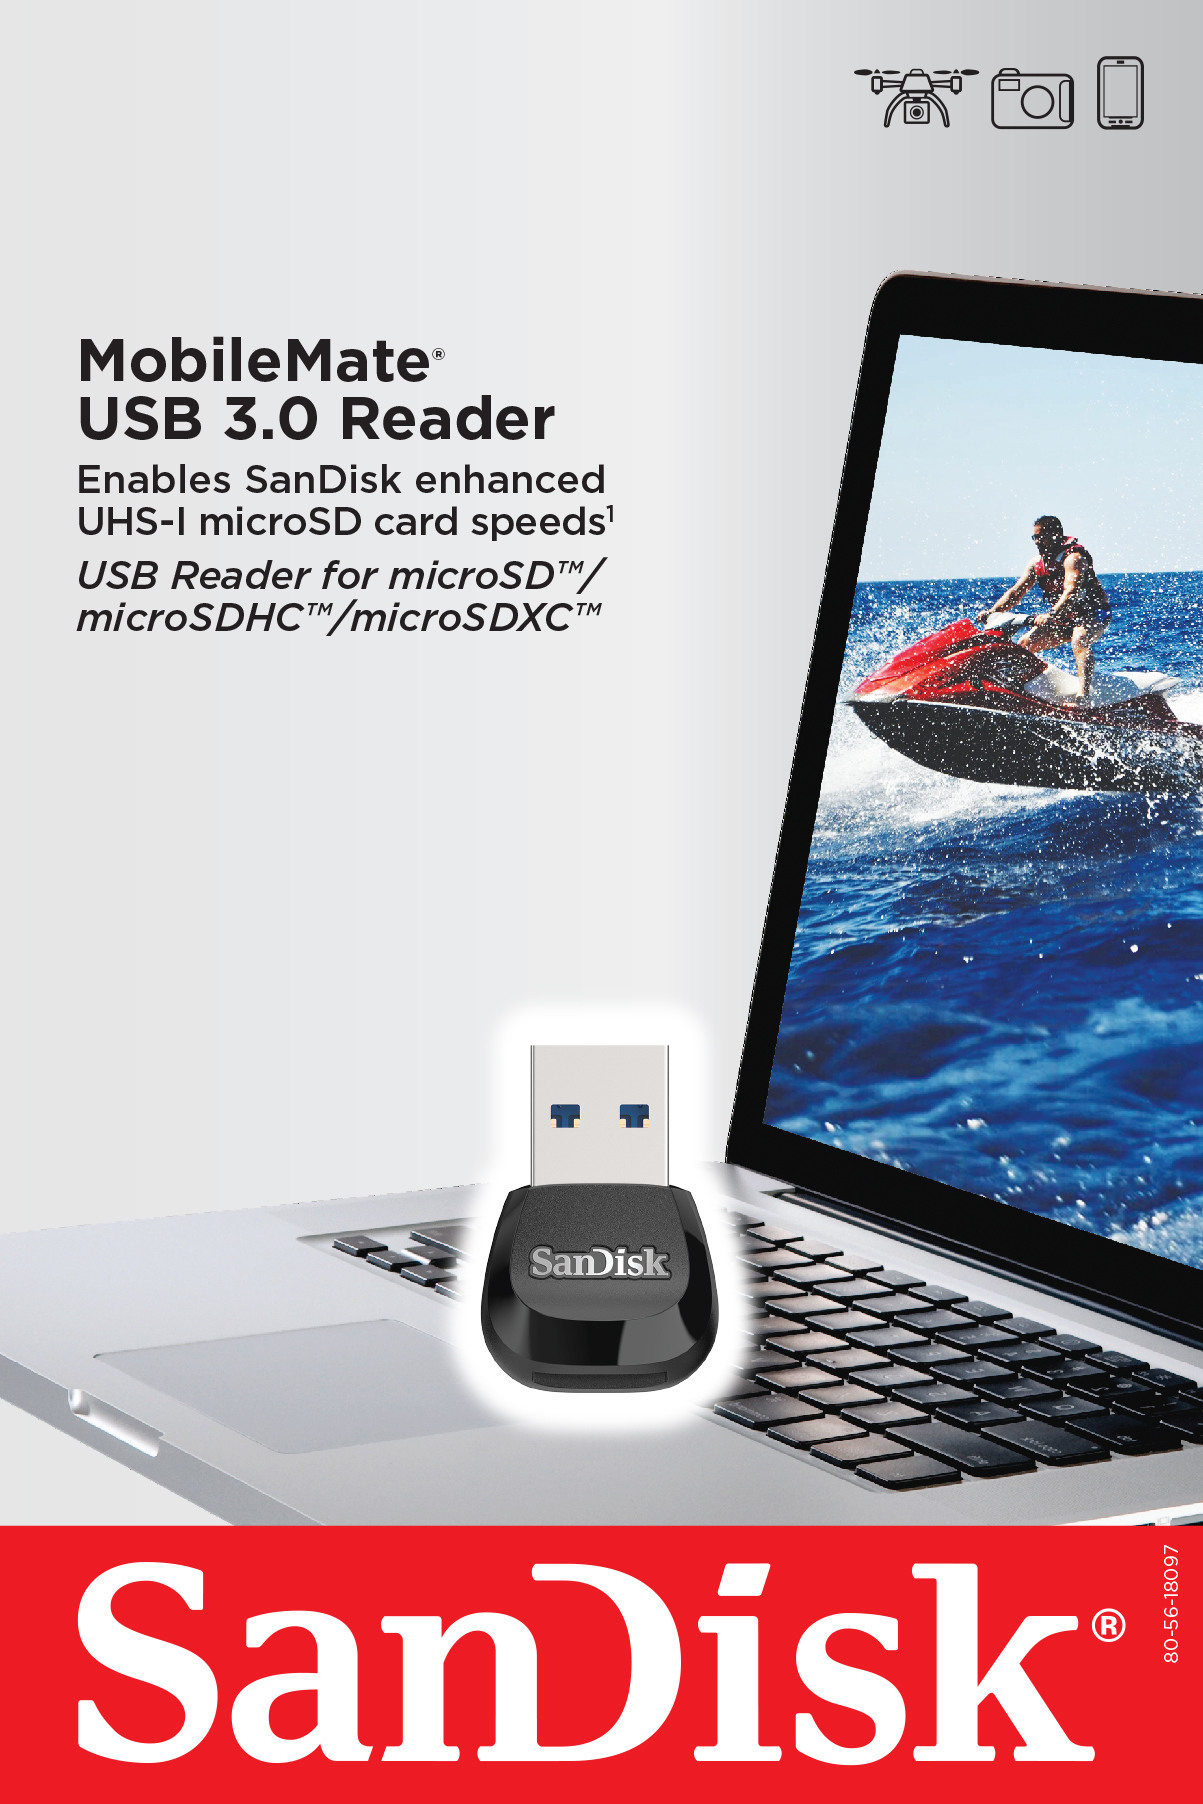 SANDISK Mobilemate microSD Reader SDDR-B531-GN6NN USB 3.0